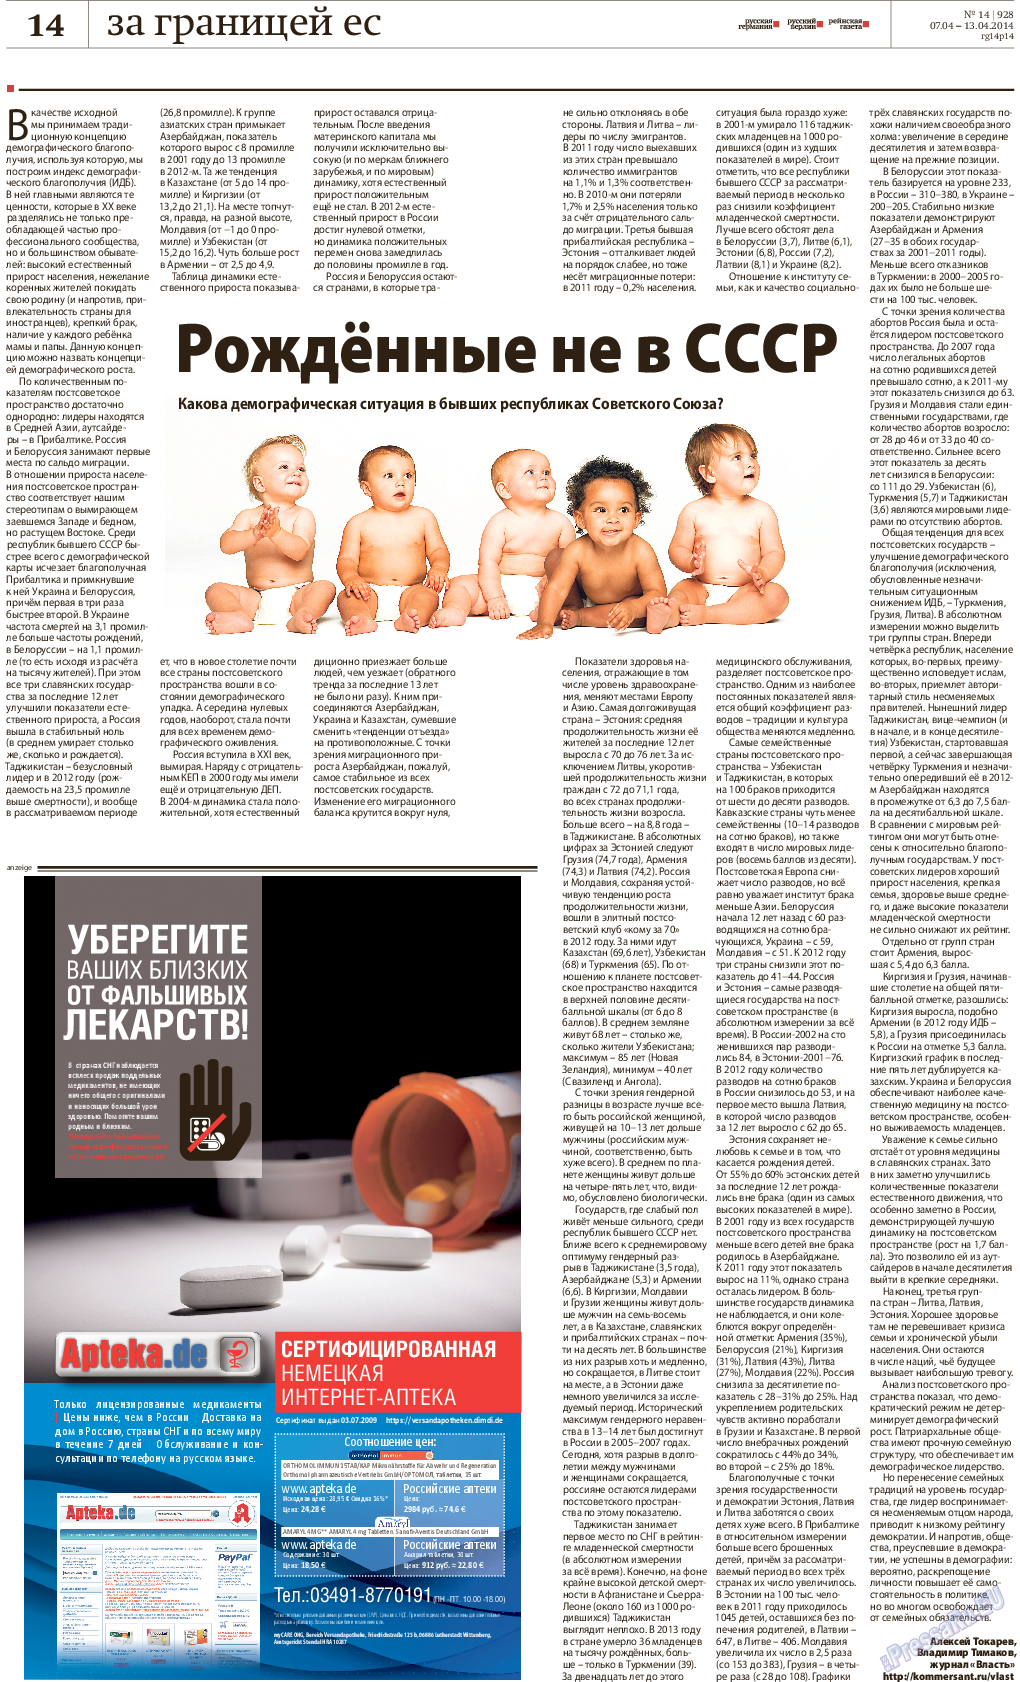 Рейнская газета, газета. 2014 №14 стр.14